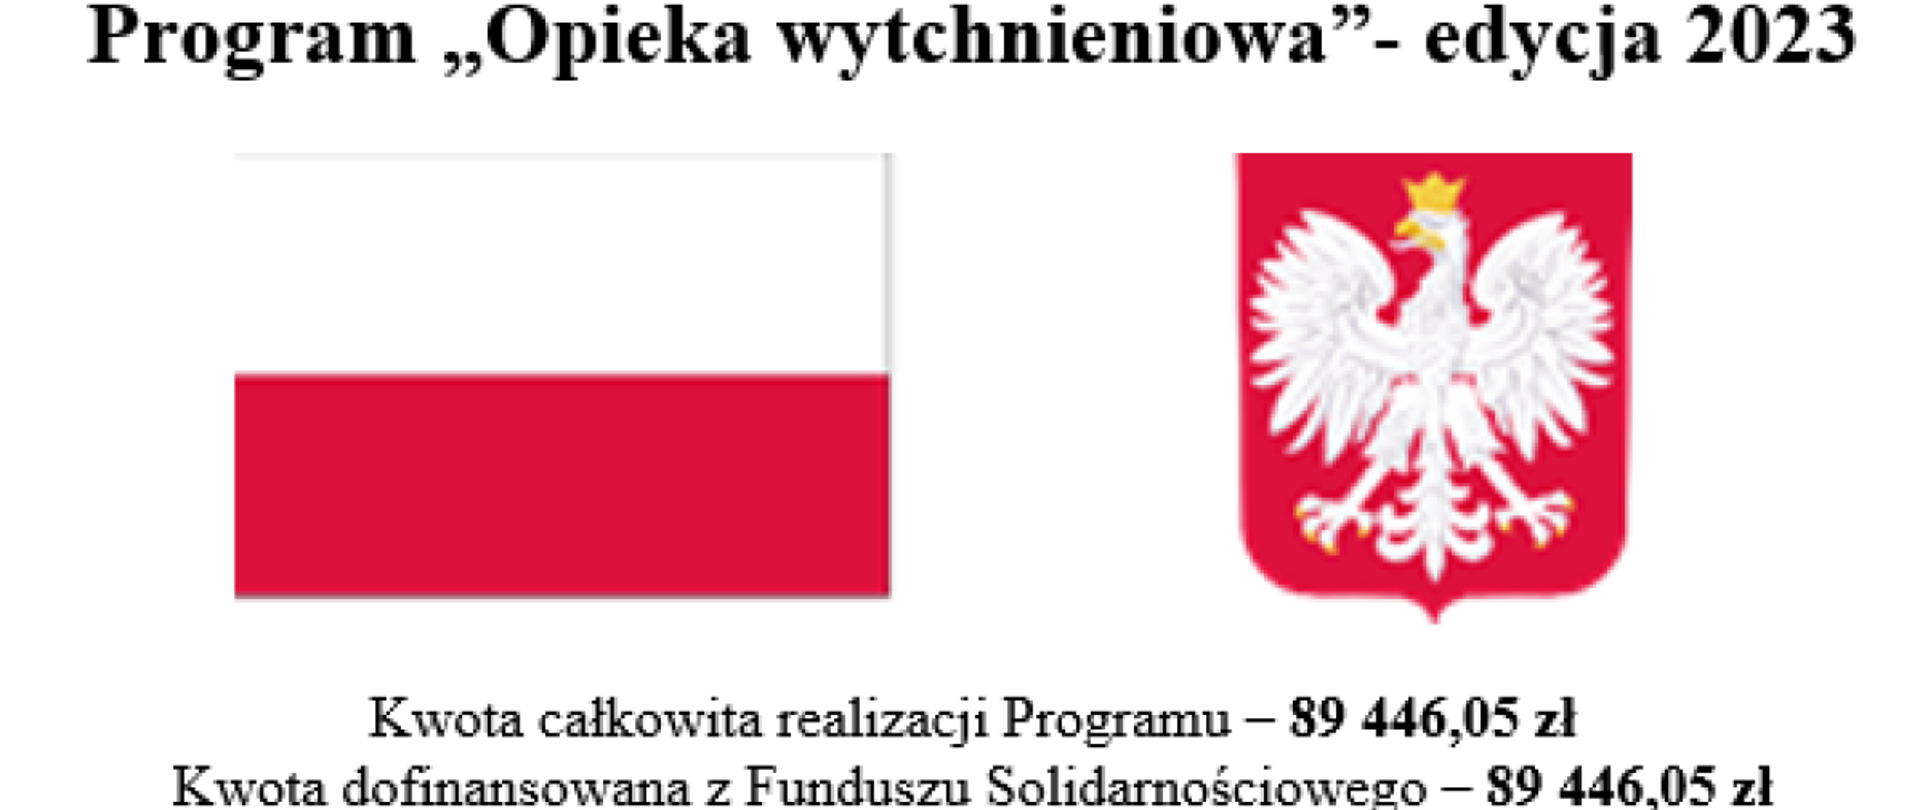 Napis - program „Opieka wytchnieniowa”- edycja 2023. Na białym tle flaga i godło Polski. Niżej kwoty realizacji programu i dofinansowania z Funduszu Solidarnościowego.